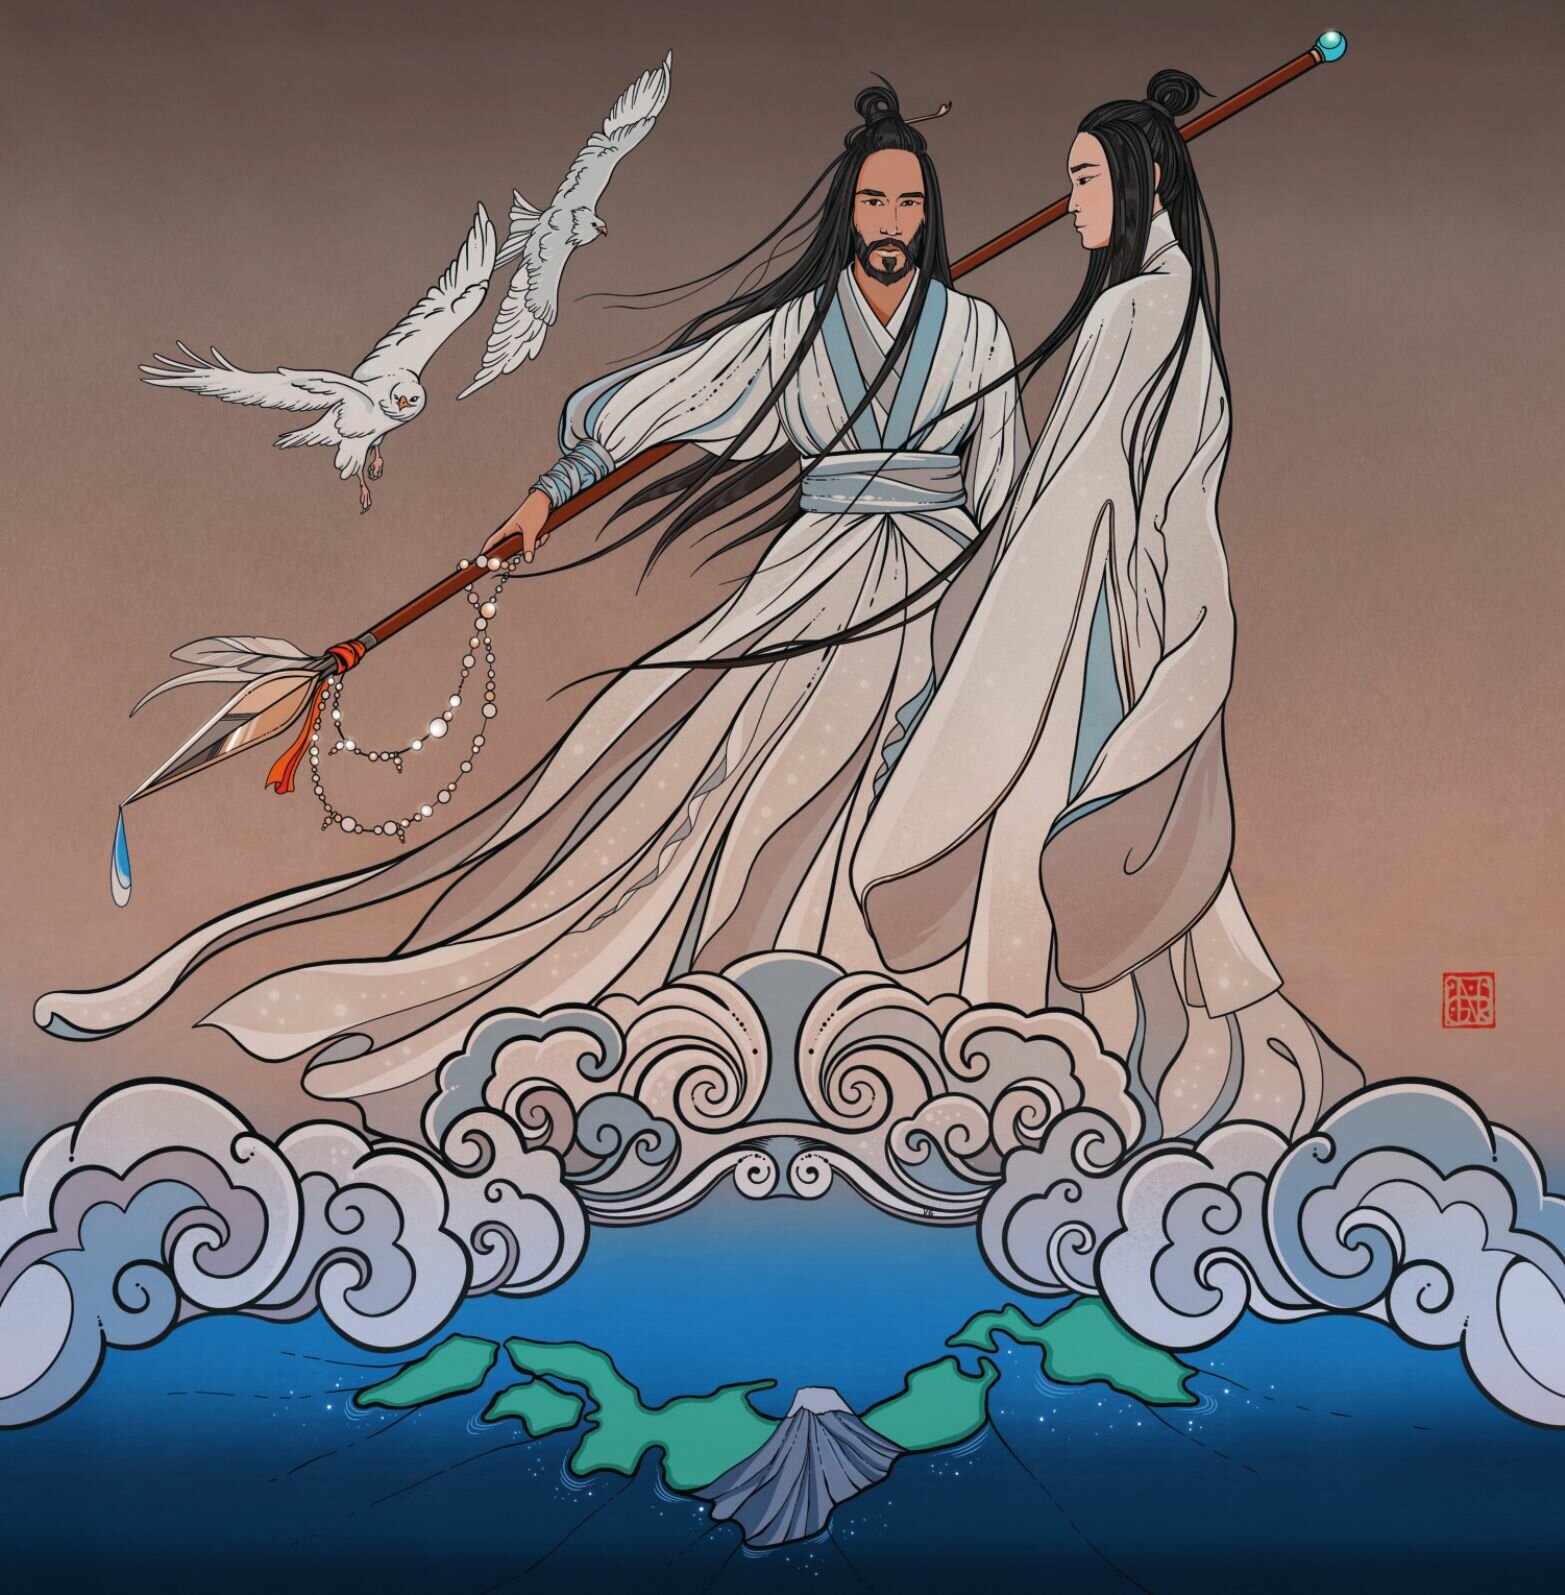 Кицунэ, цилинь и другие легенды Китая и Японских островов - фото №15